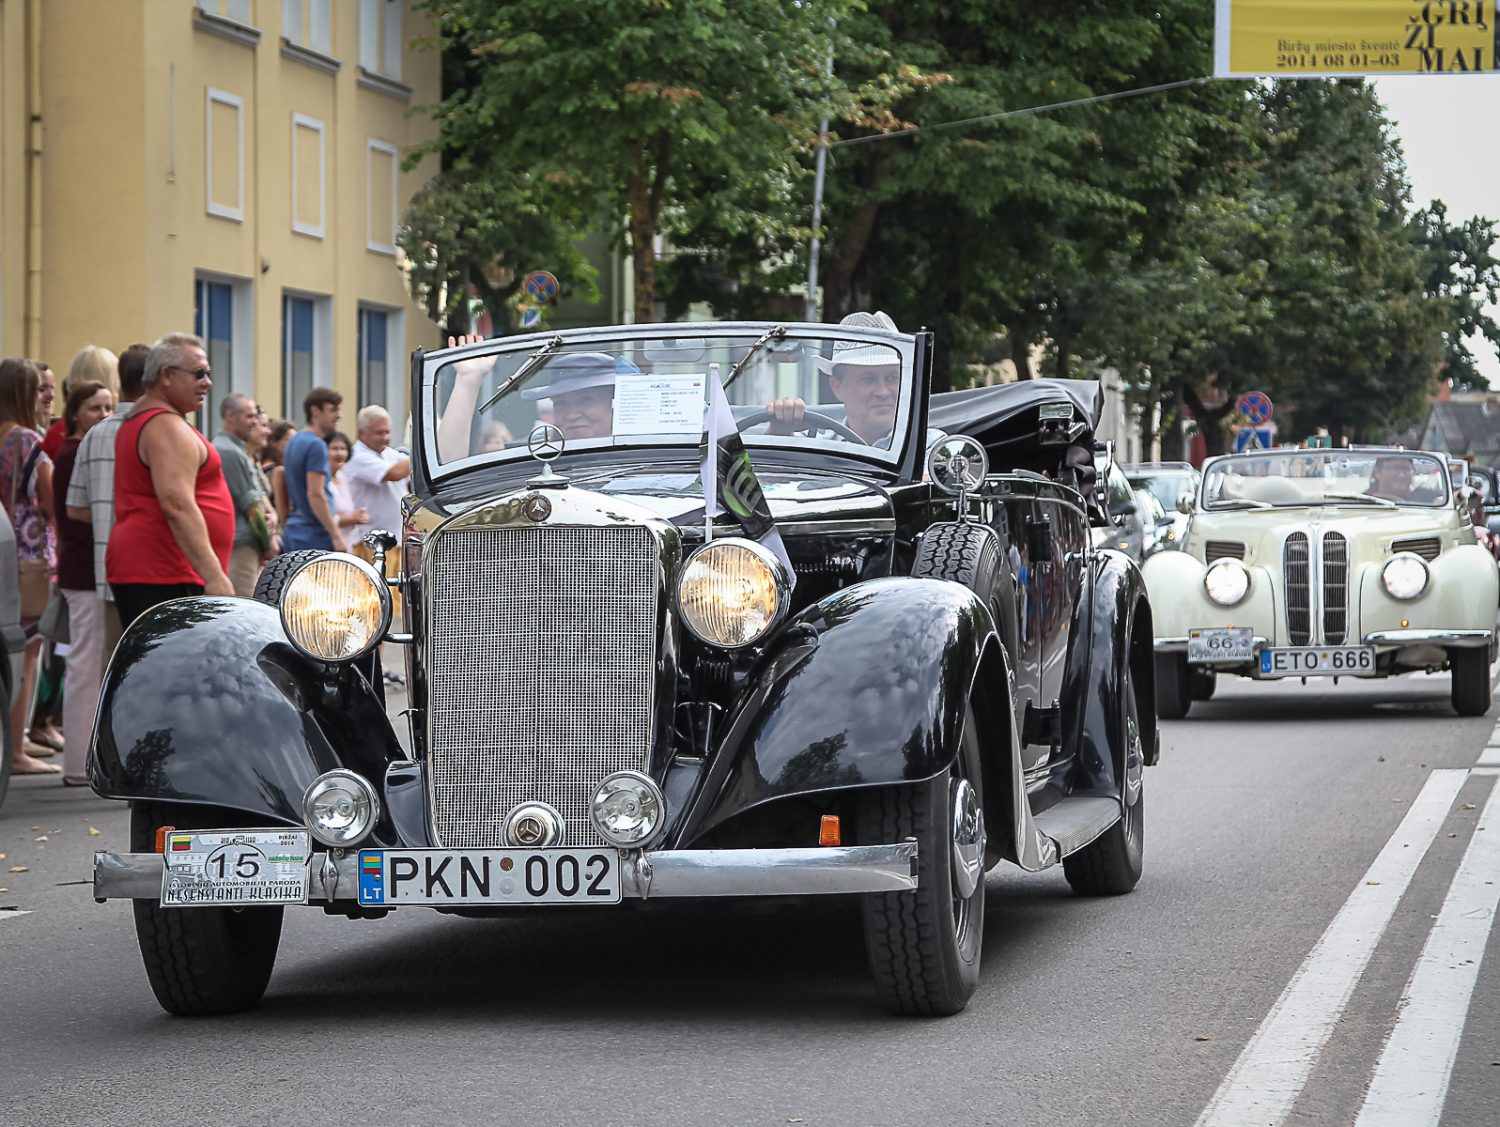 paradas-miesto-gatvemis-priekyje-mercedes-benz-320-d-1937-m-vairuojamas-lietuvos-klasikiniu-automobiliu-klubo-prezidento-gitauto-zickaus